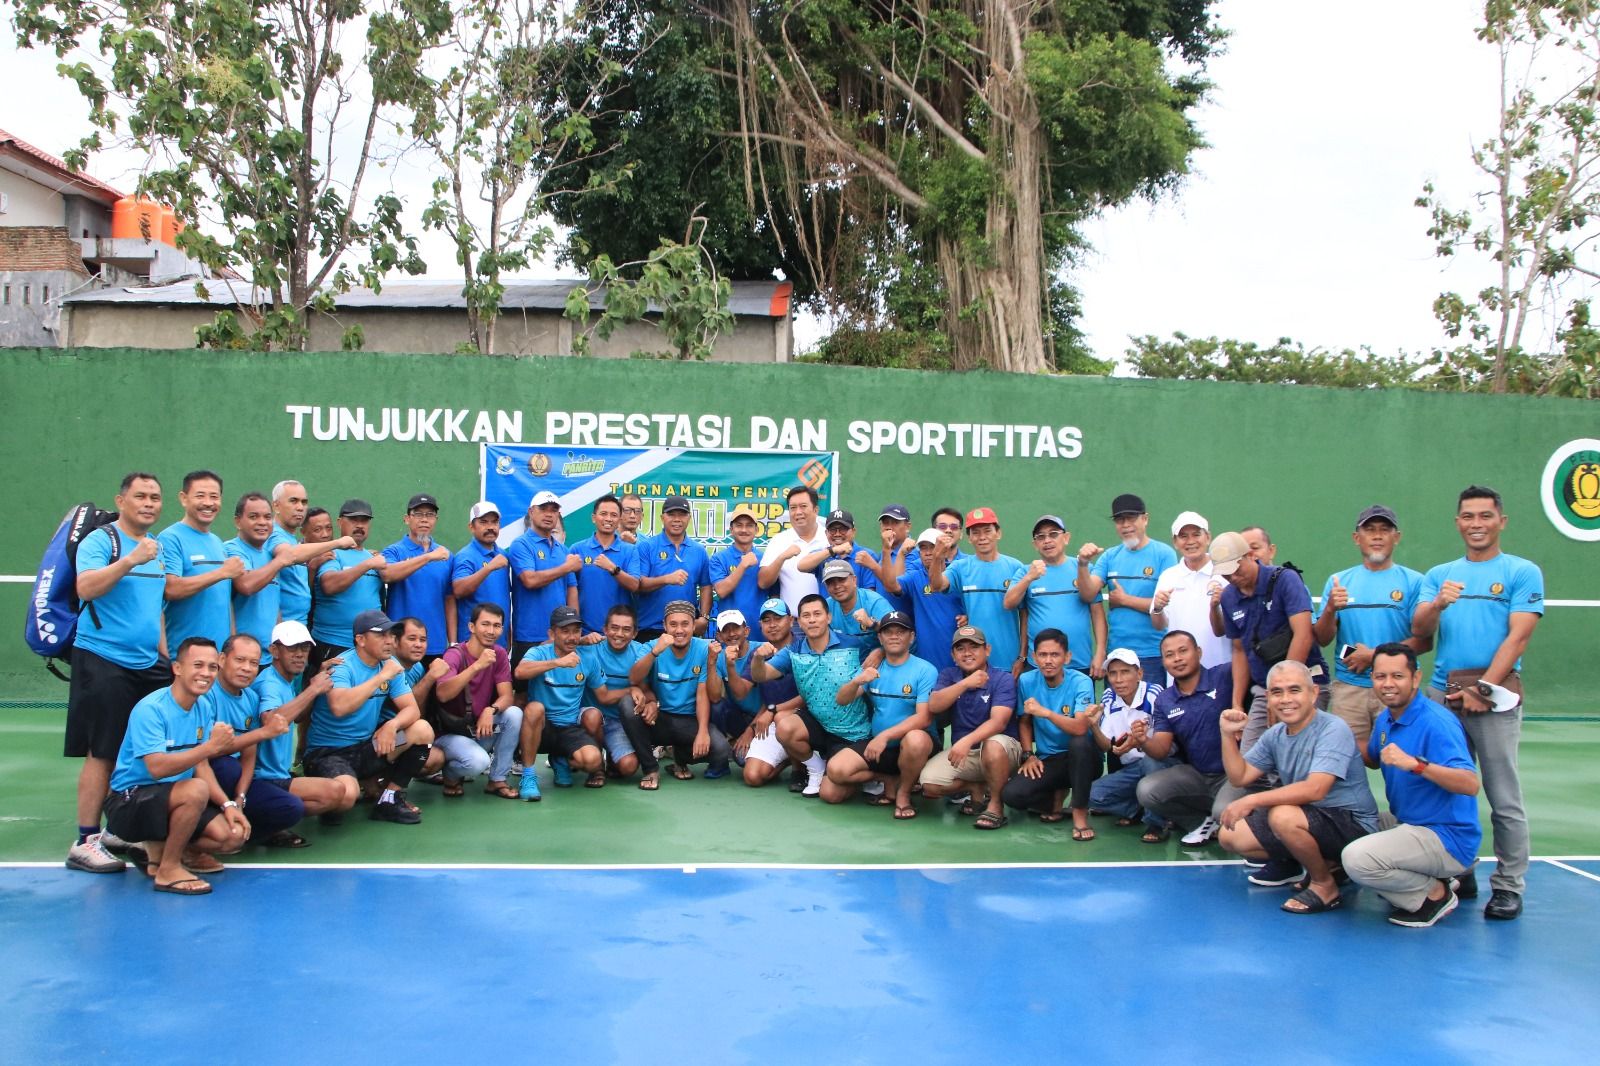 Sejumlah peserta  berfoto bersama Bupati setelah pembukaan turnamen tenis Bupati Cup 1 di Bulukumba.